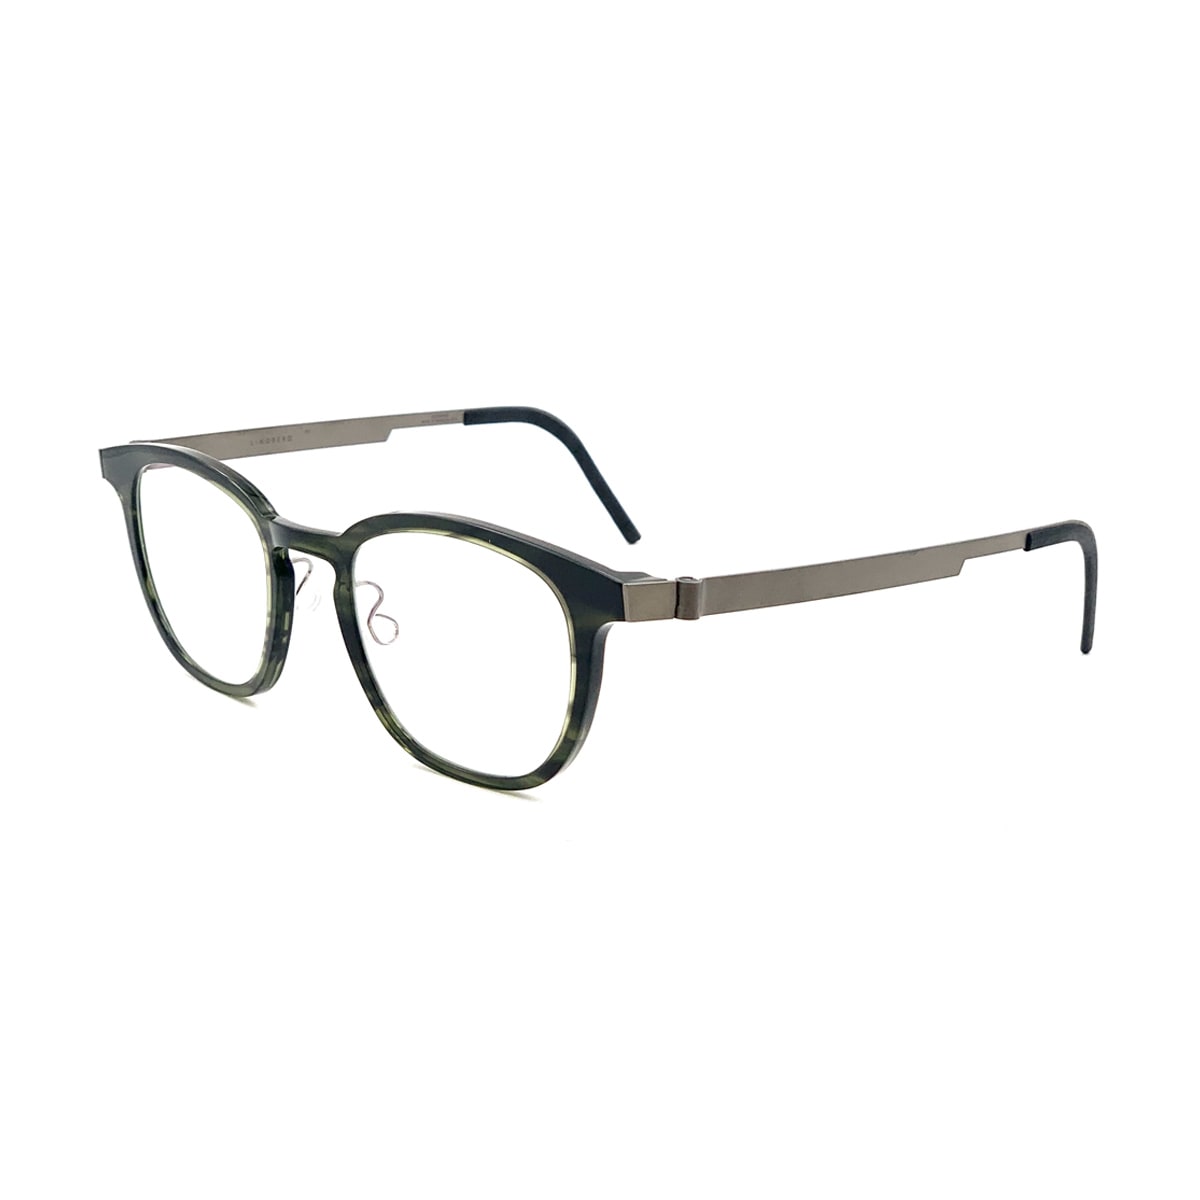 Lindberg Acetanium 1051 Glasses